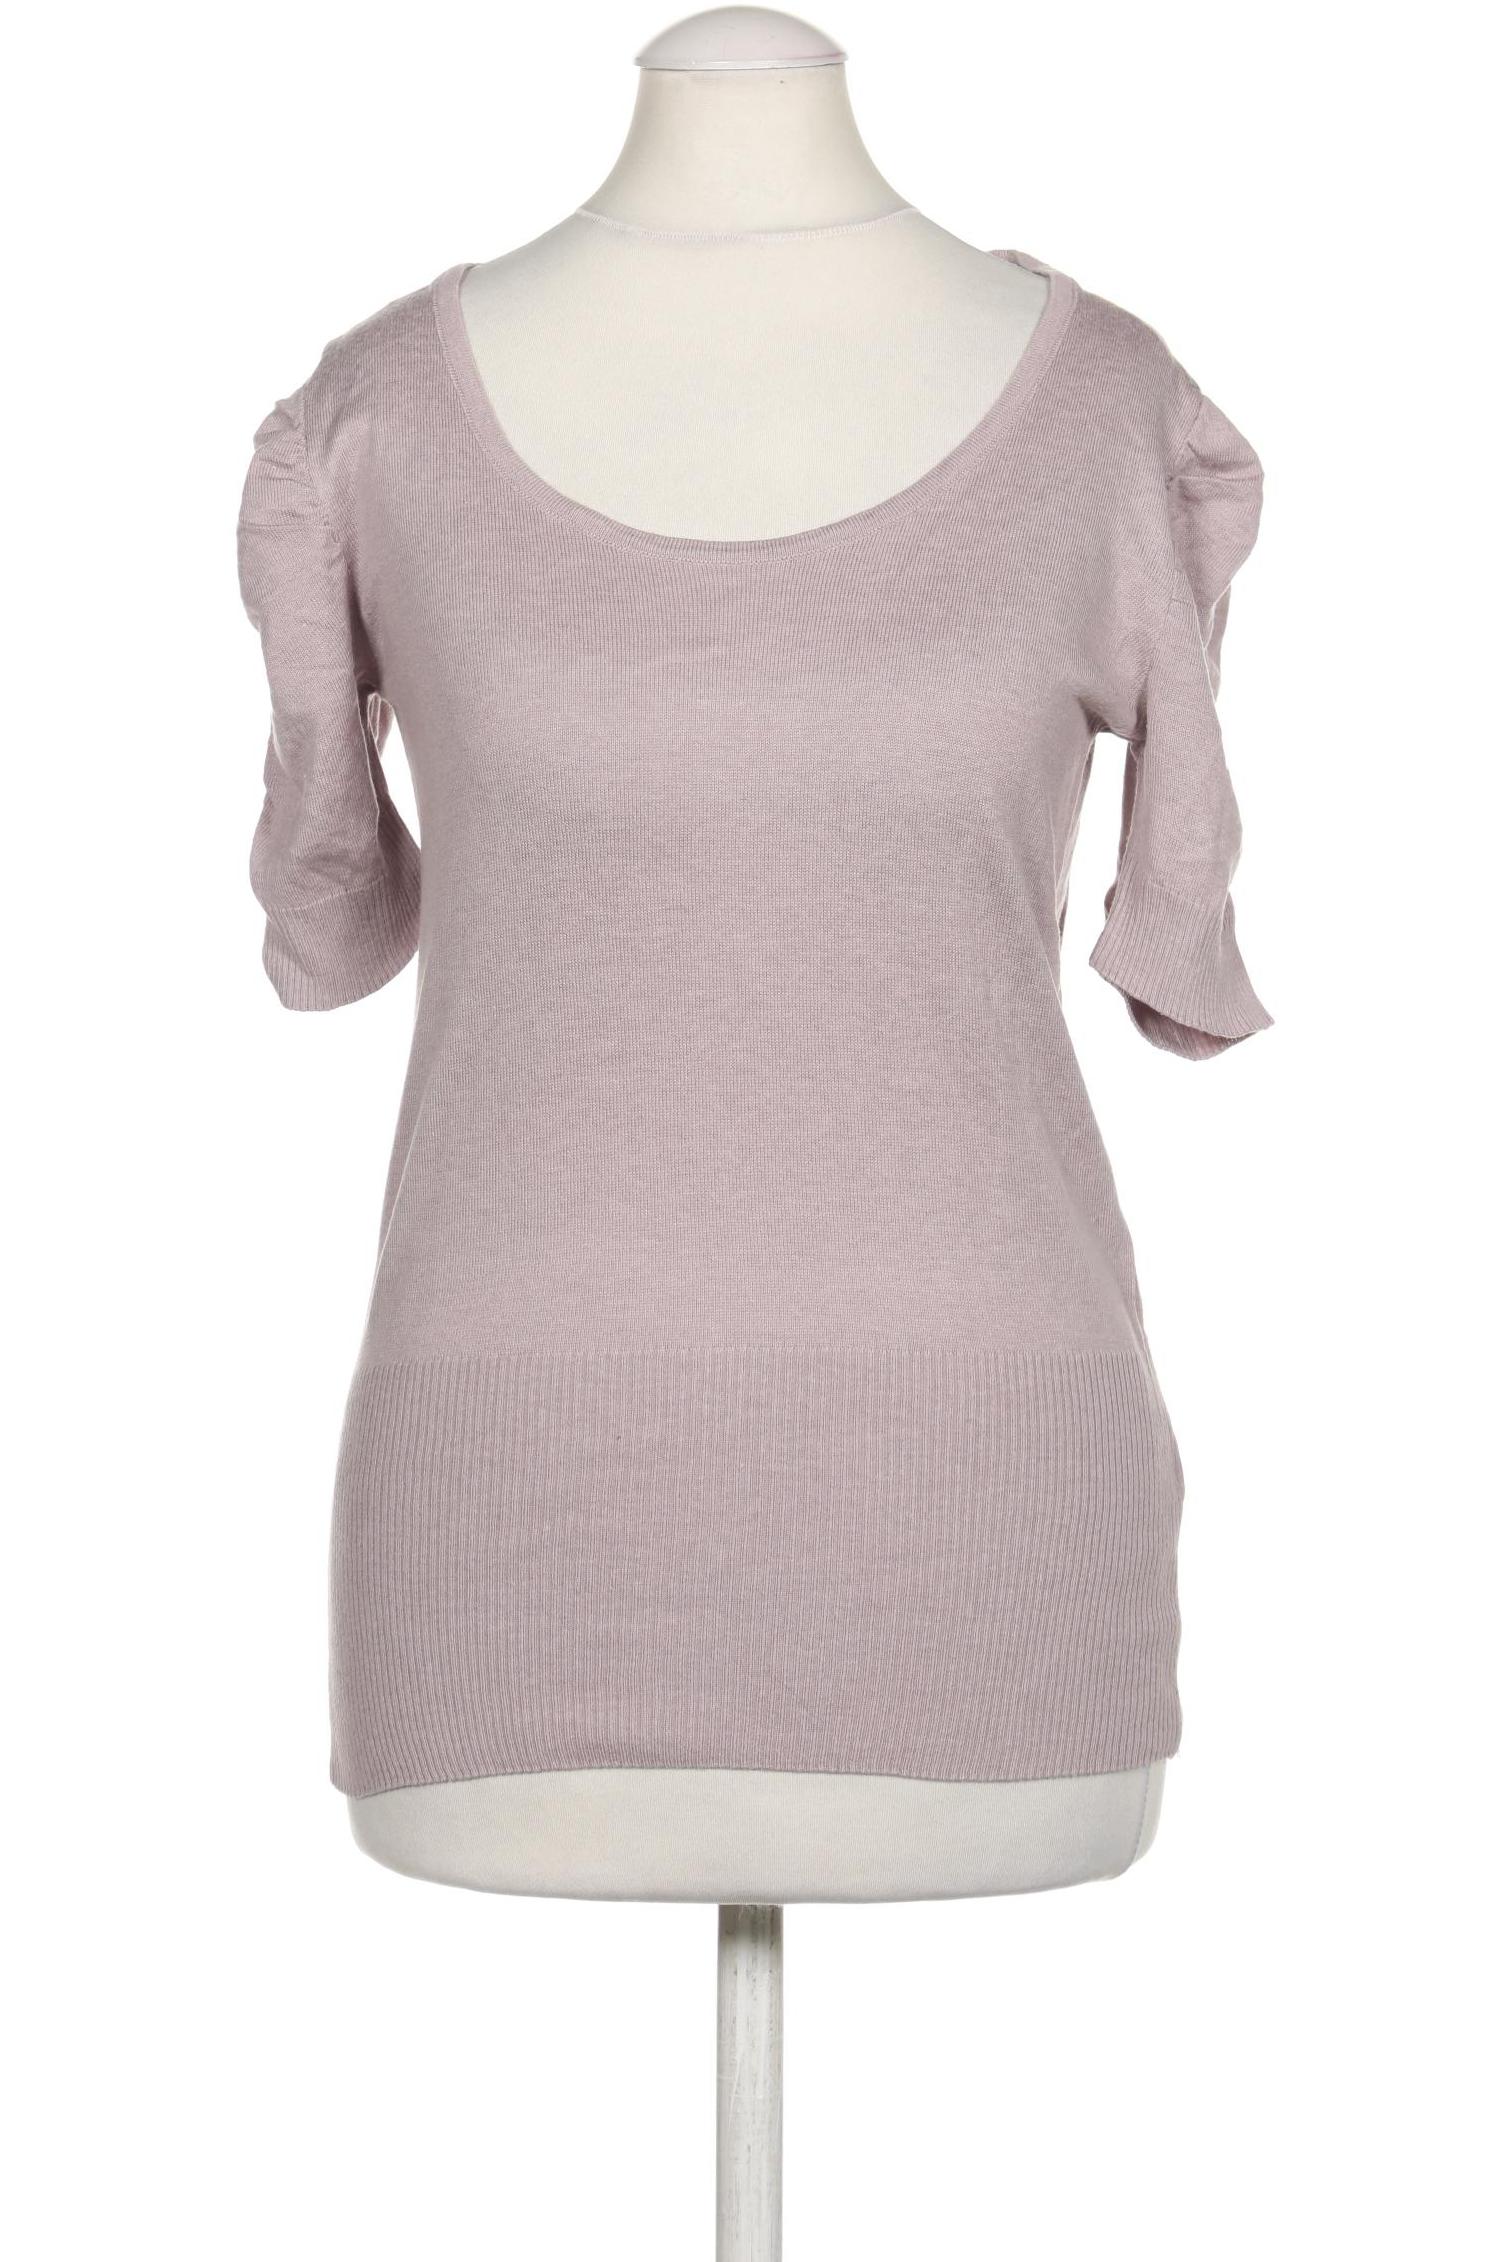 Zara Damen T-Shirt, flieder, Gr. 36 von ZARA